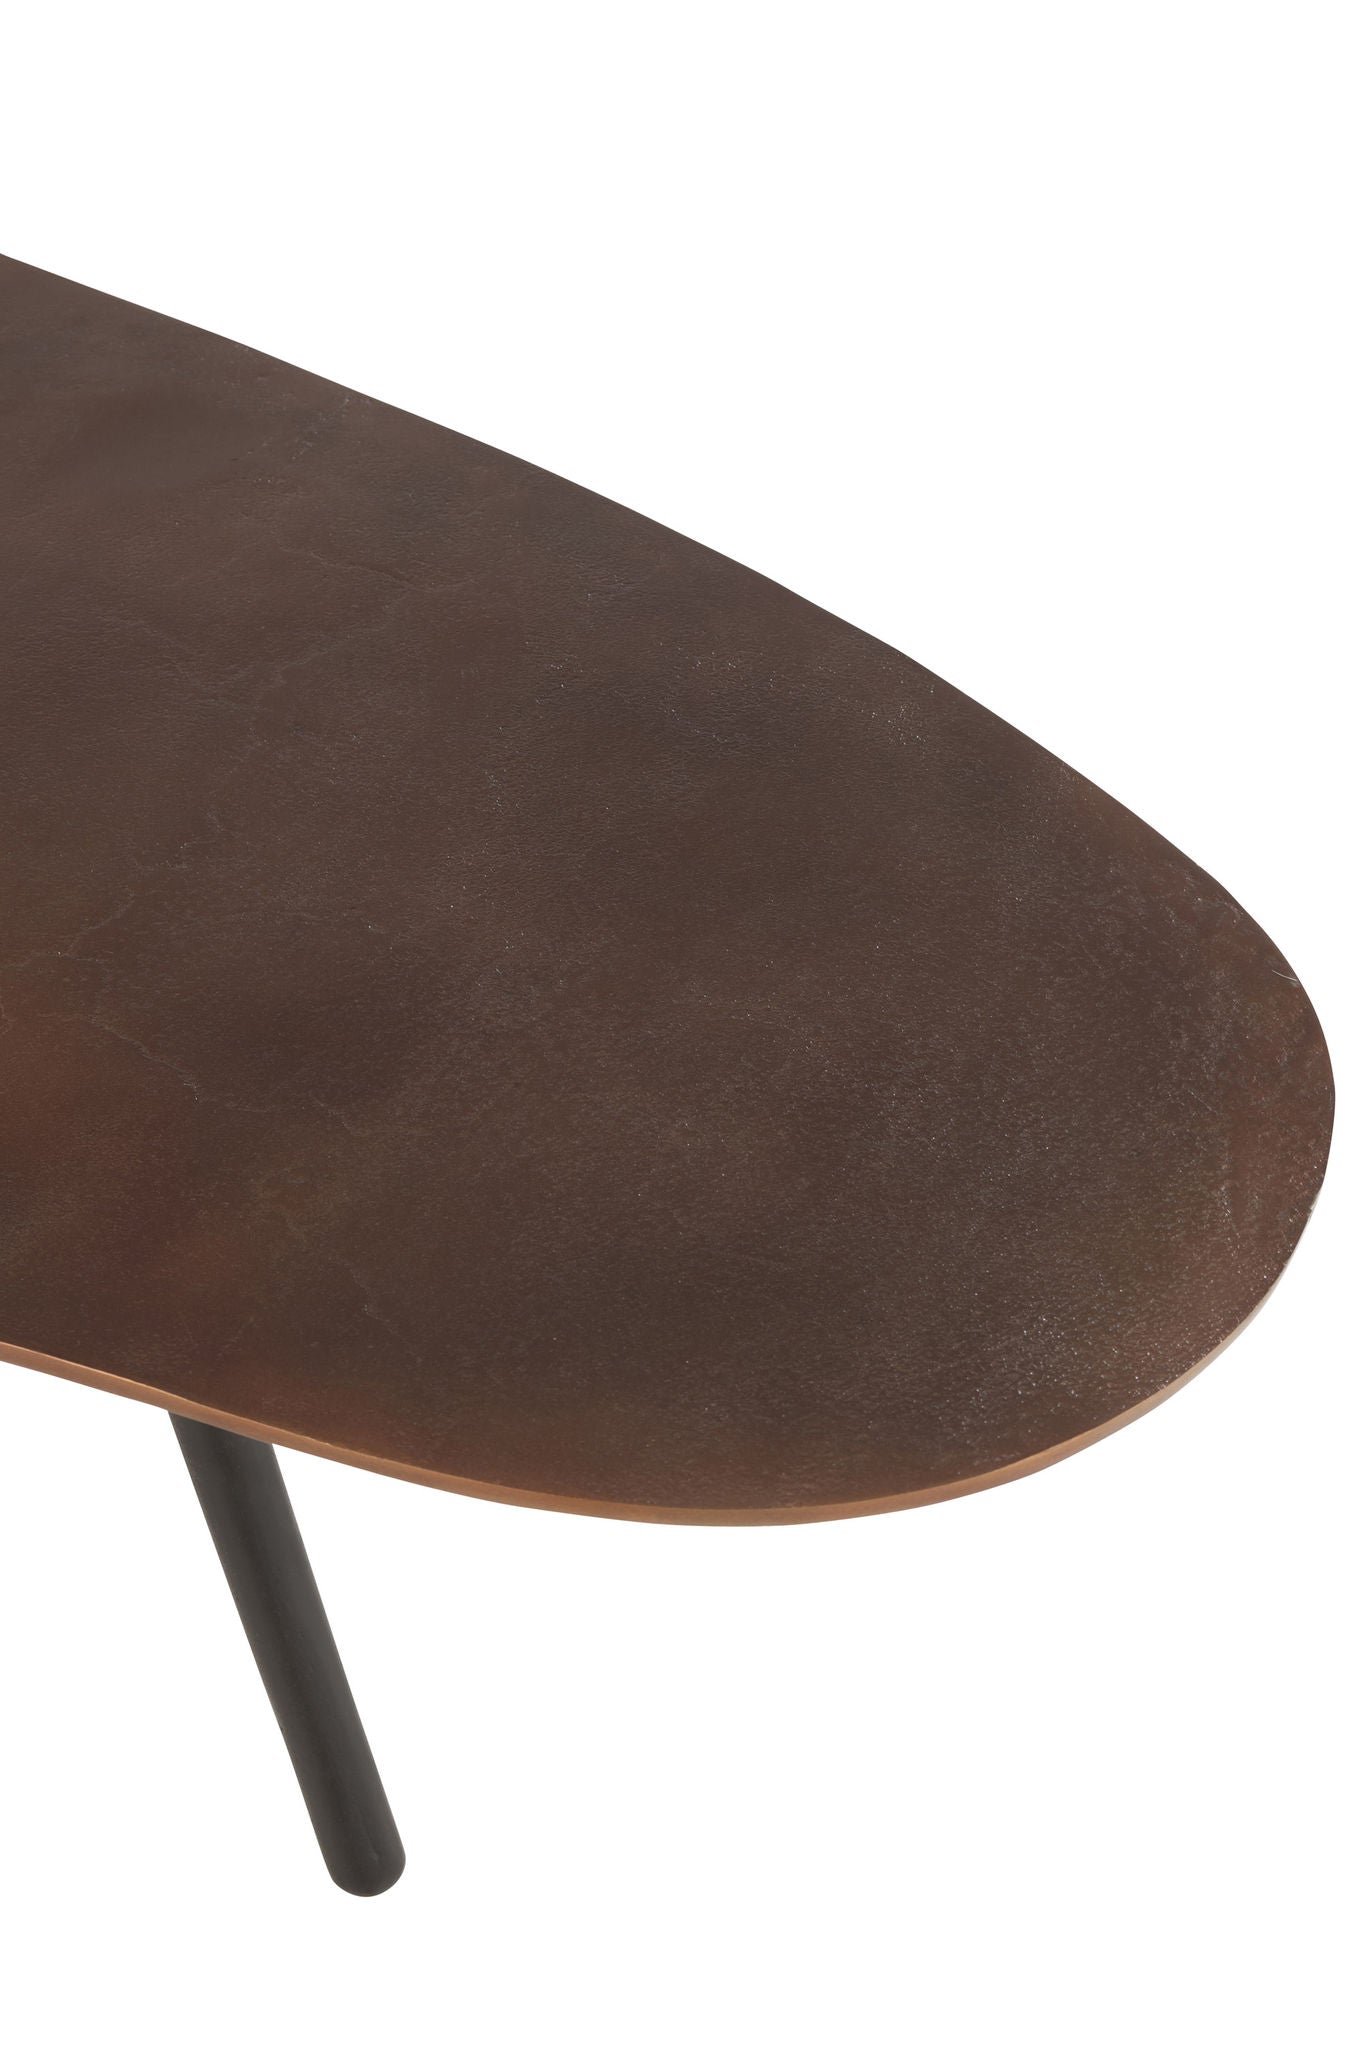 Soffbordsdråb aluminium/jernbrun stor